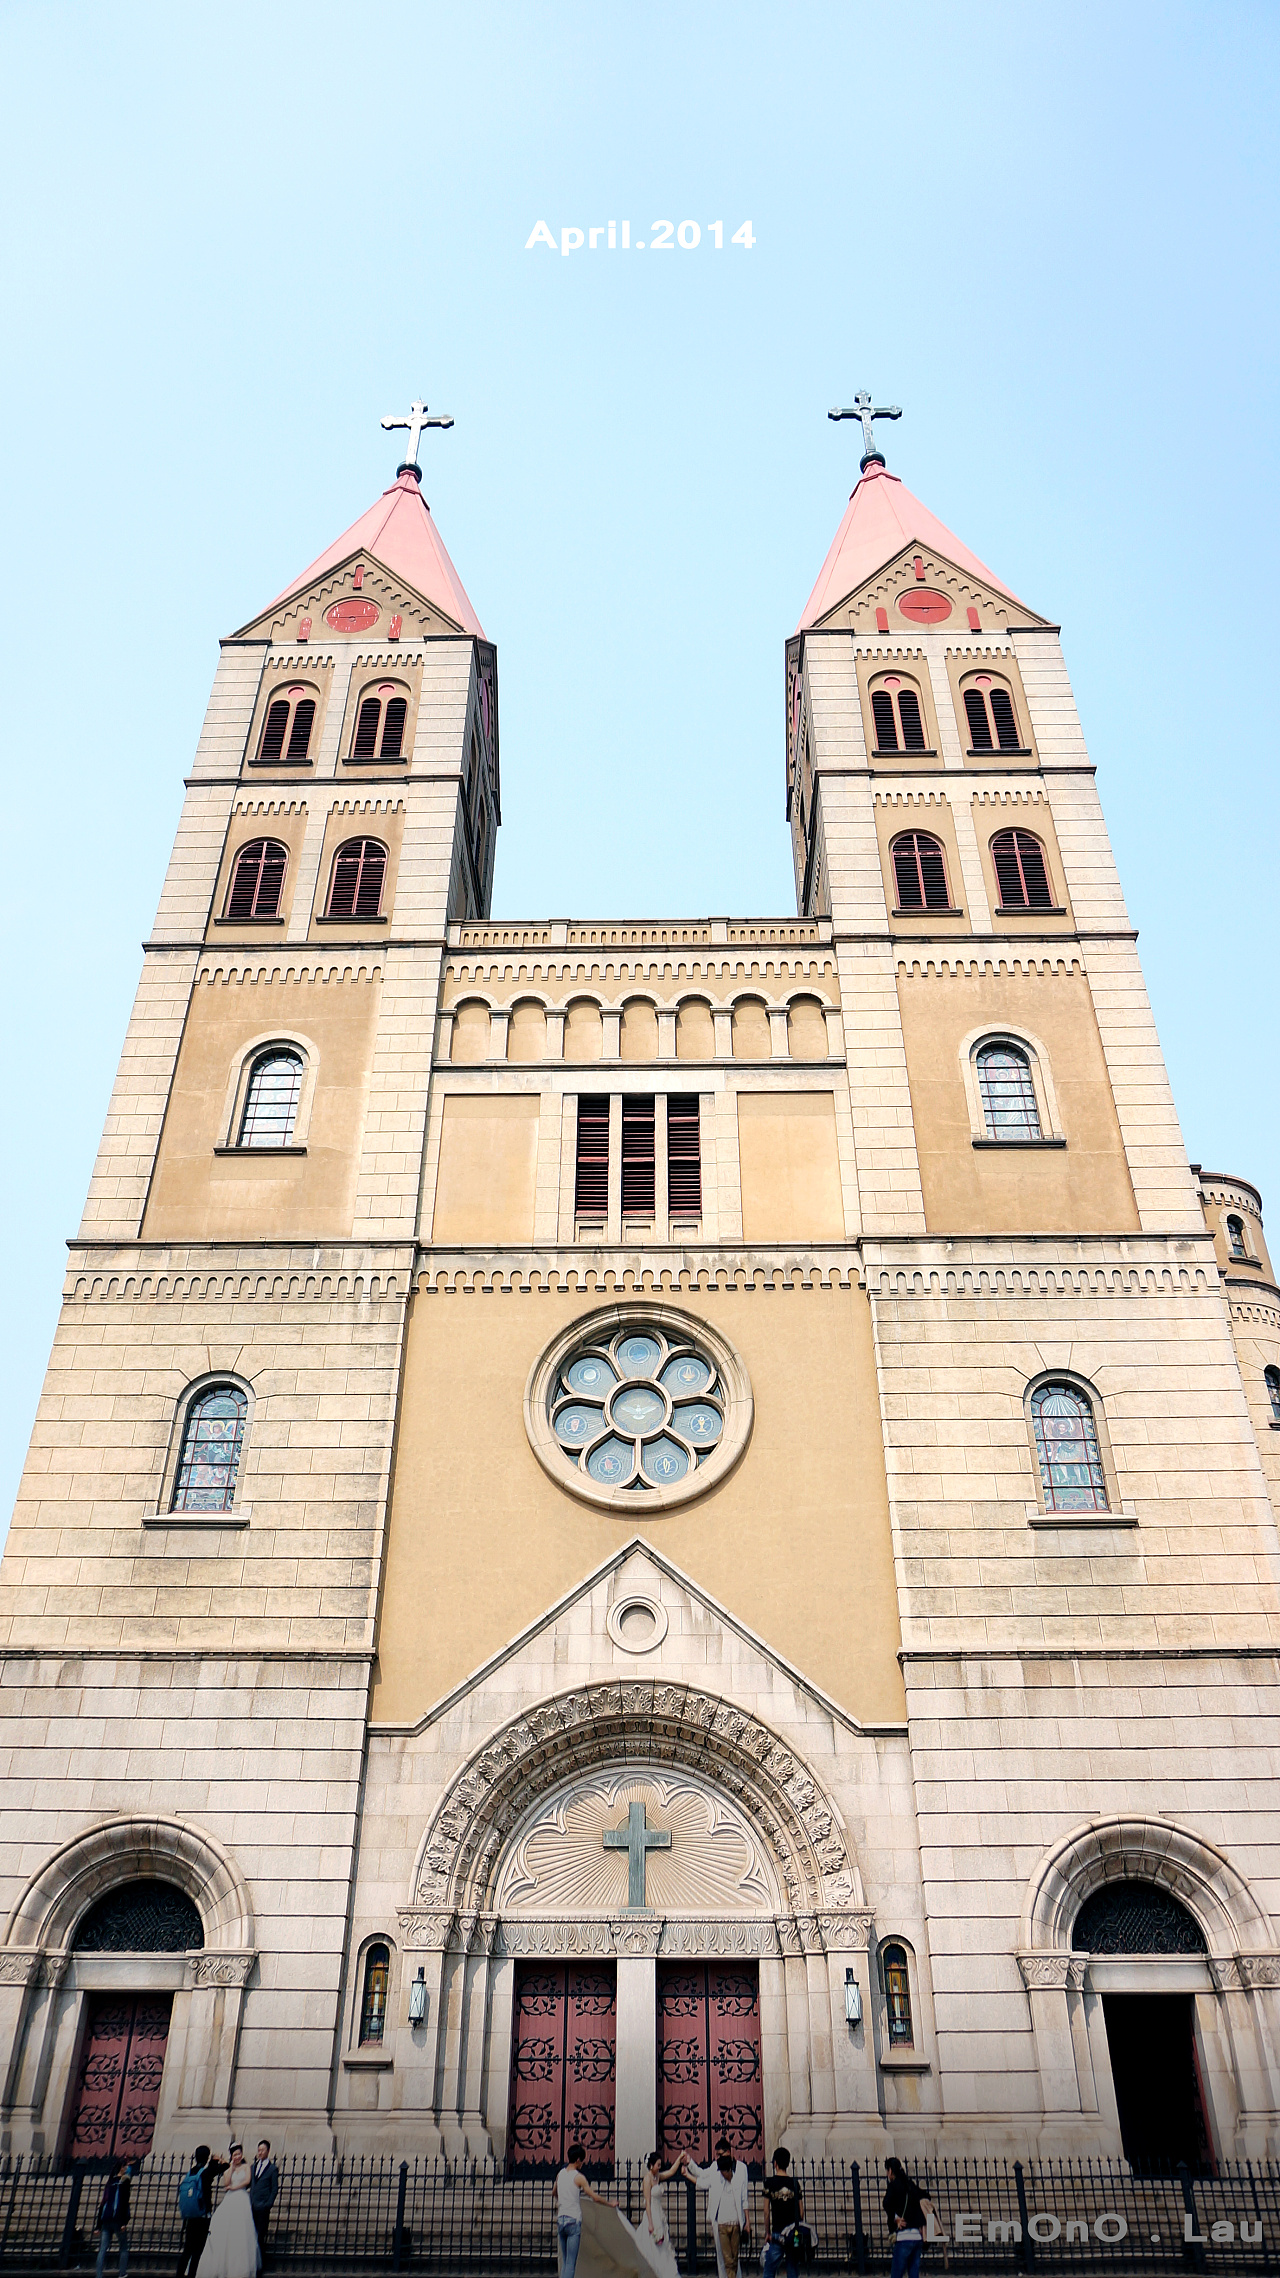 东莞市基督教太平福音堂